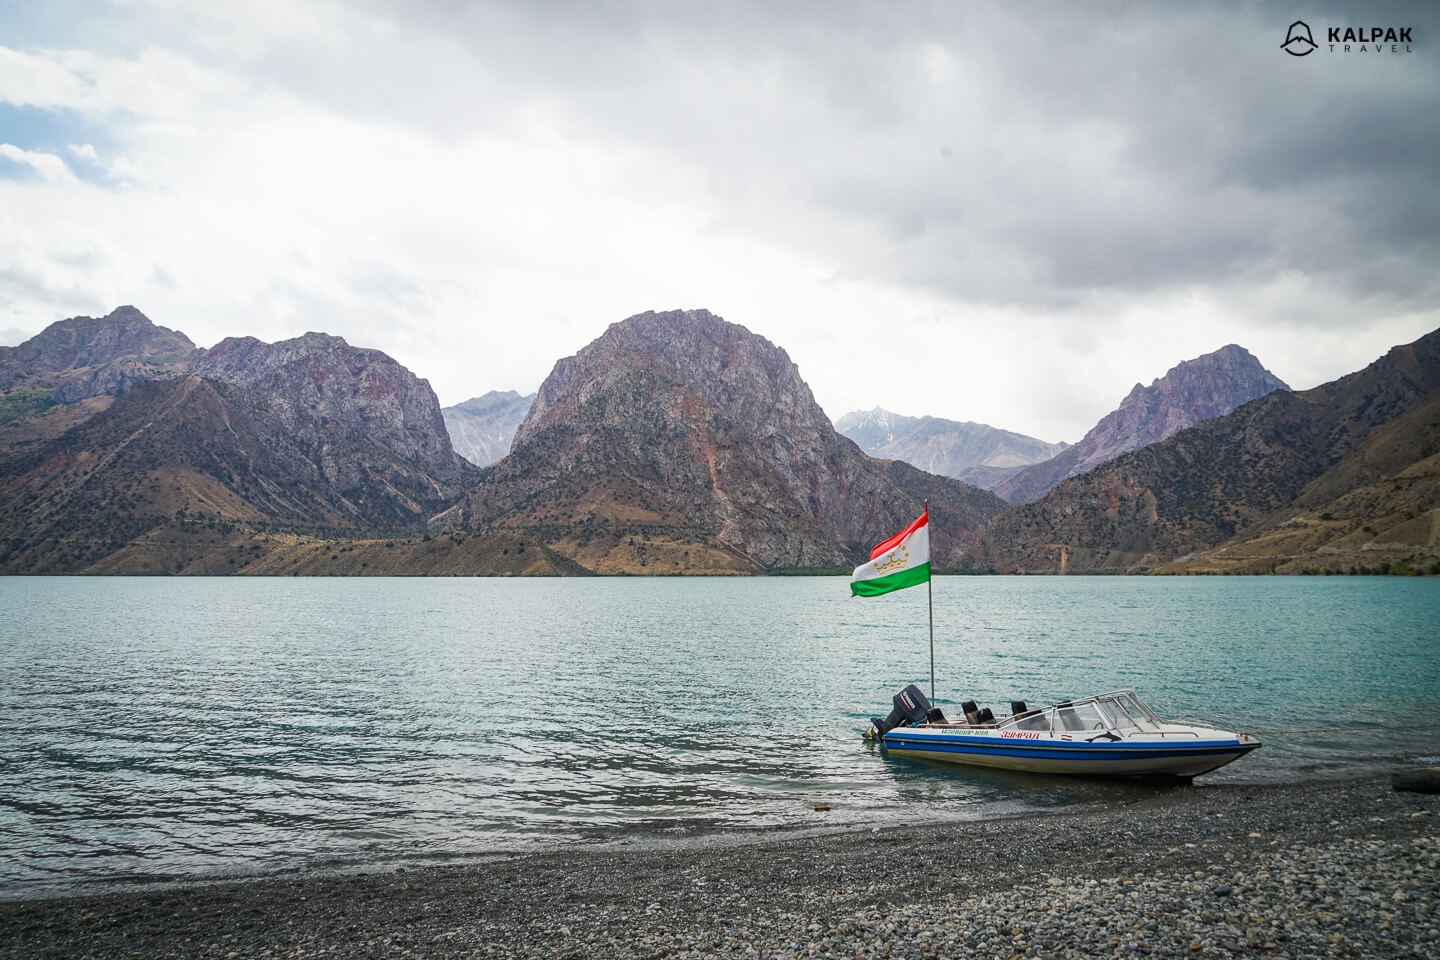 Iskanderkul lake in Fan Mountains